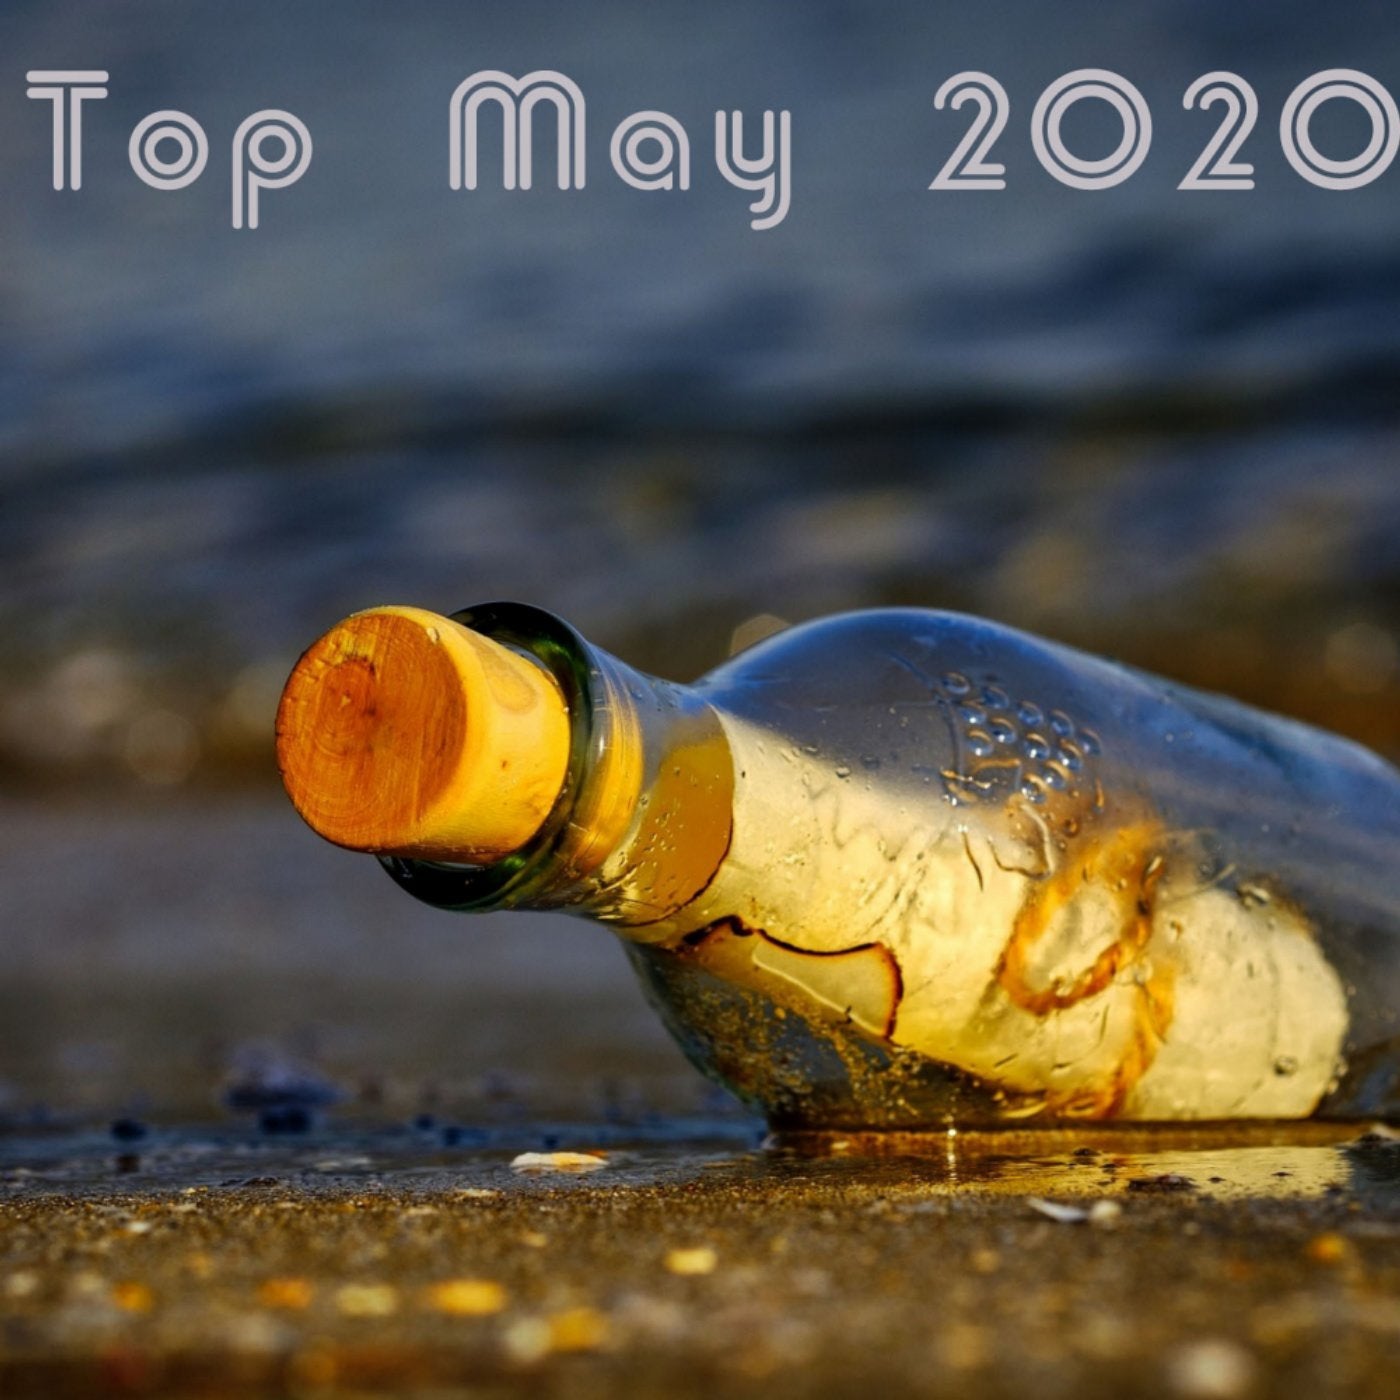 Top May 2020